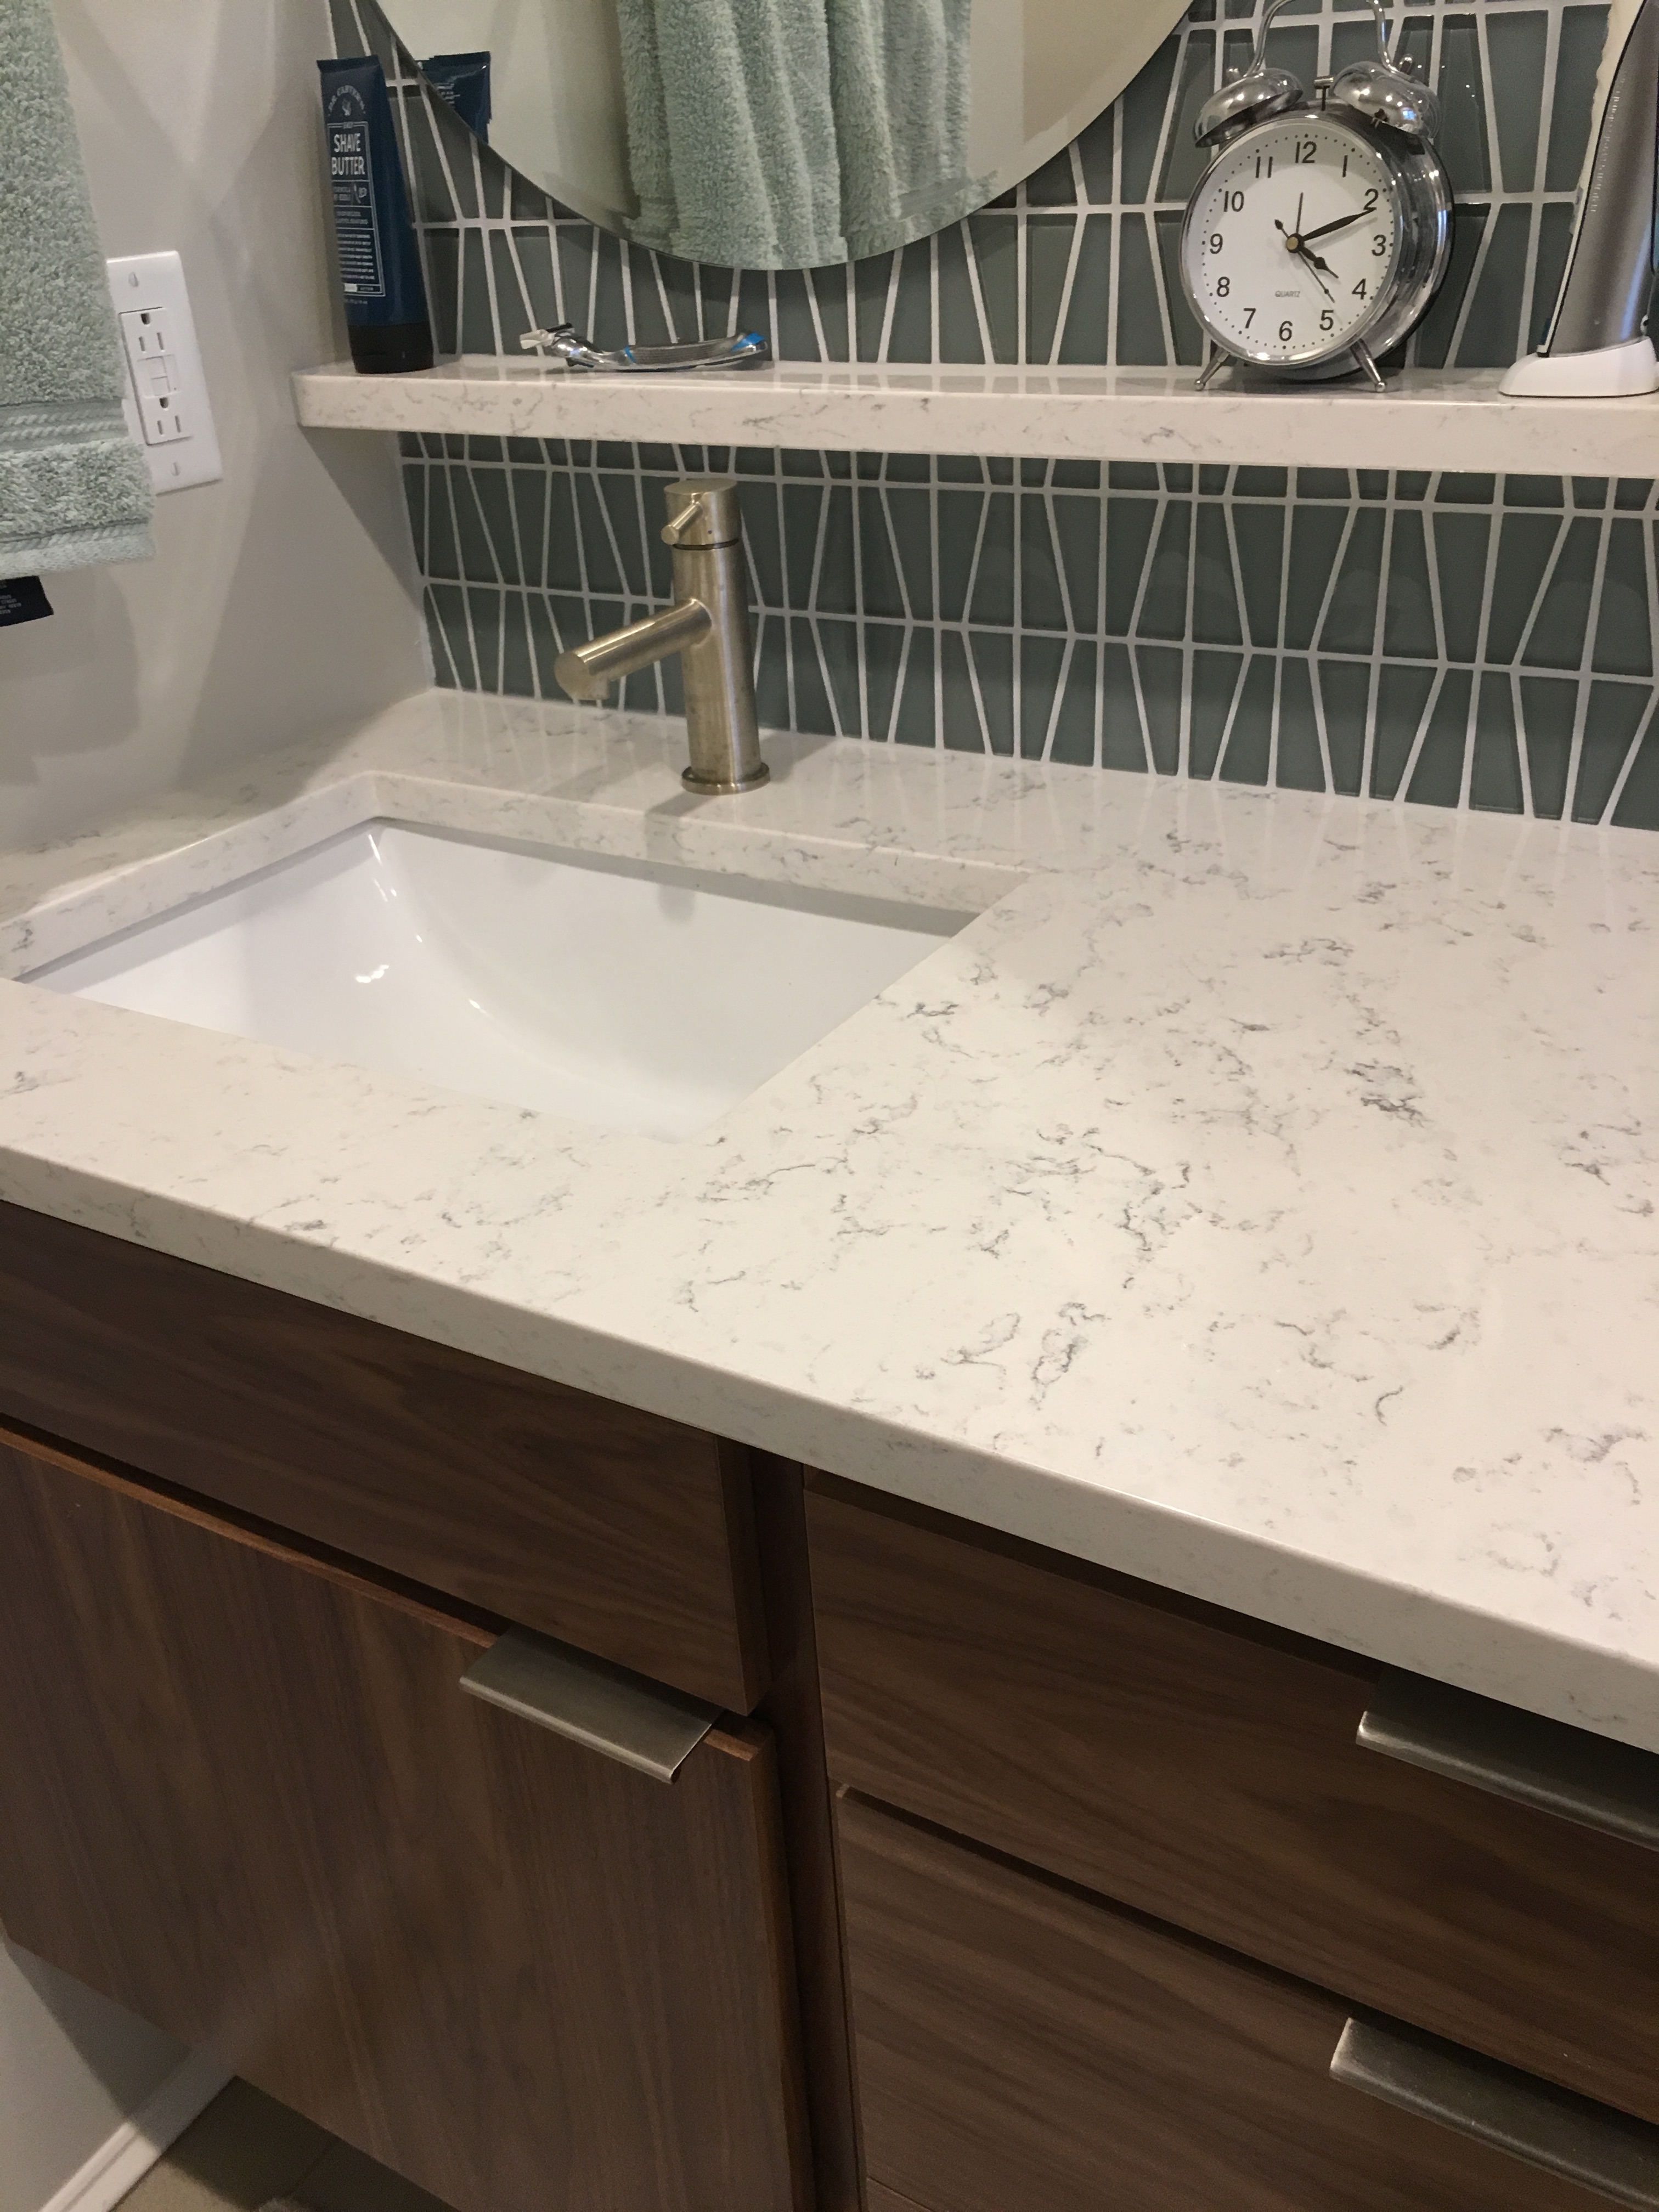 Mares Bathroom Remodel Vanity Hanstone Quartz Countertop